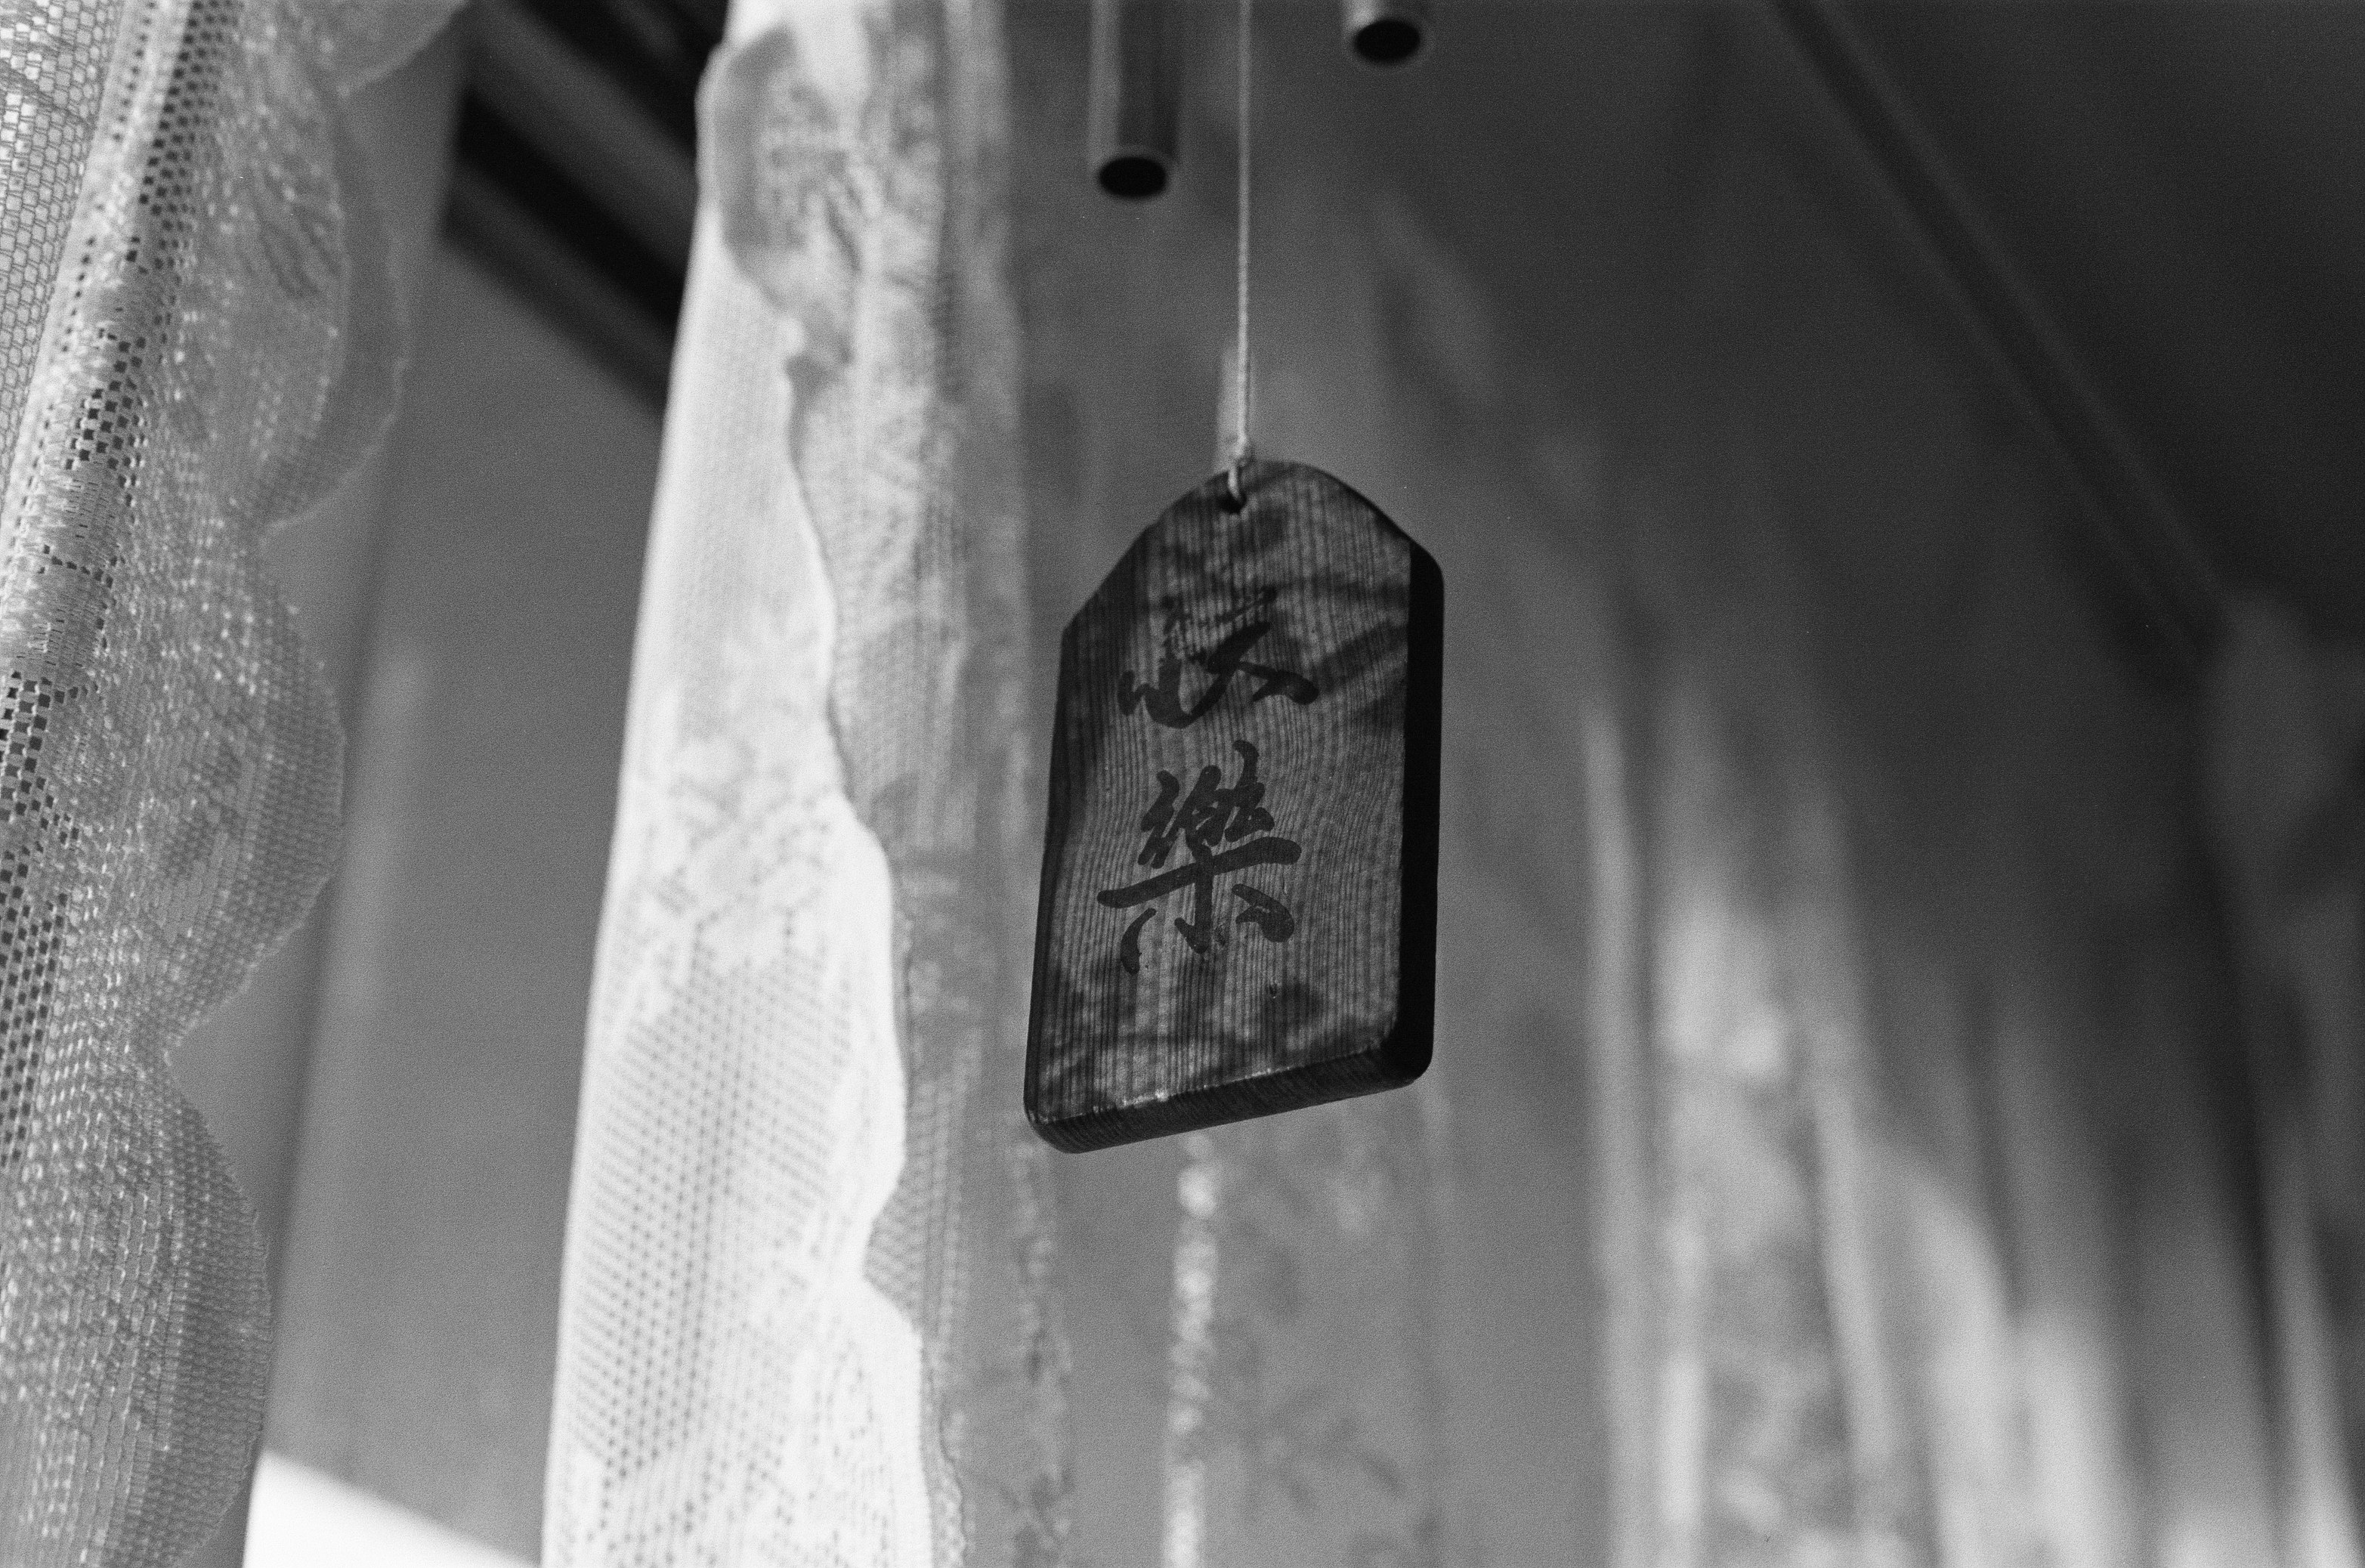 hanging Kanji script tile